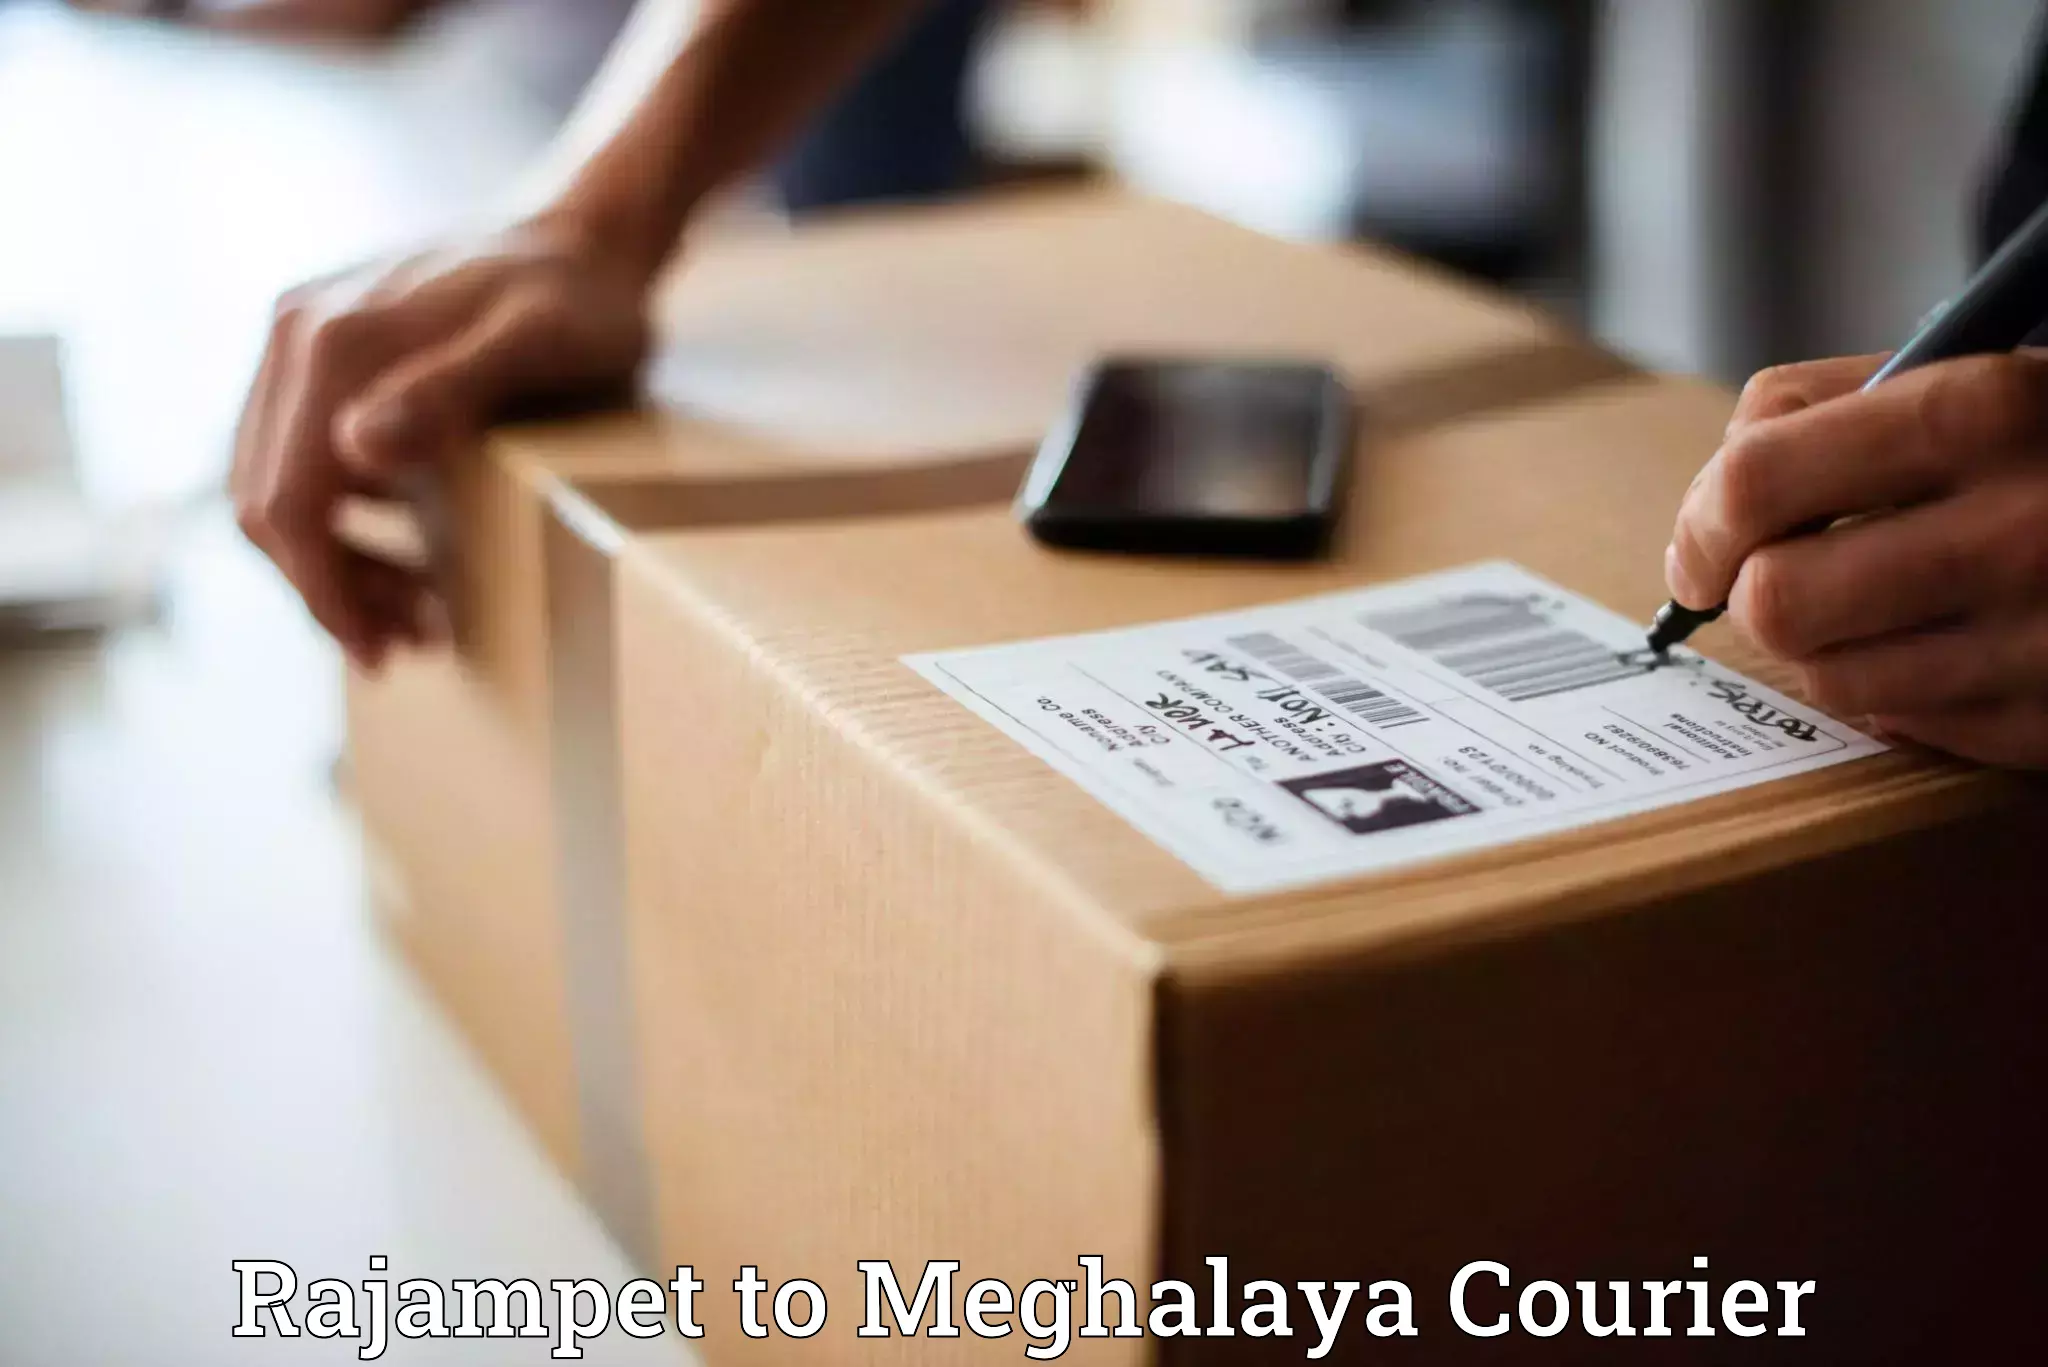 Custom courier packaging Rajampet to Meghalaya